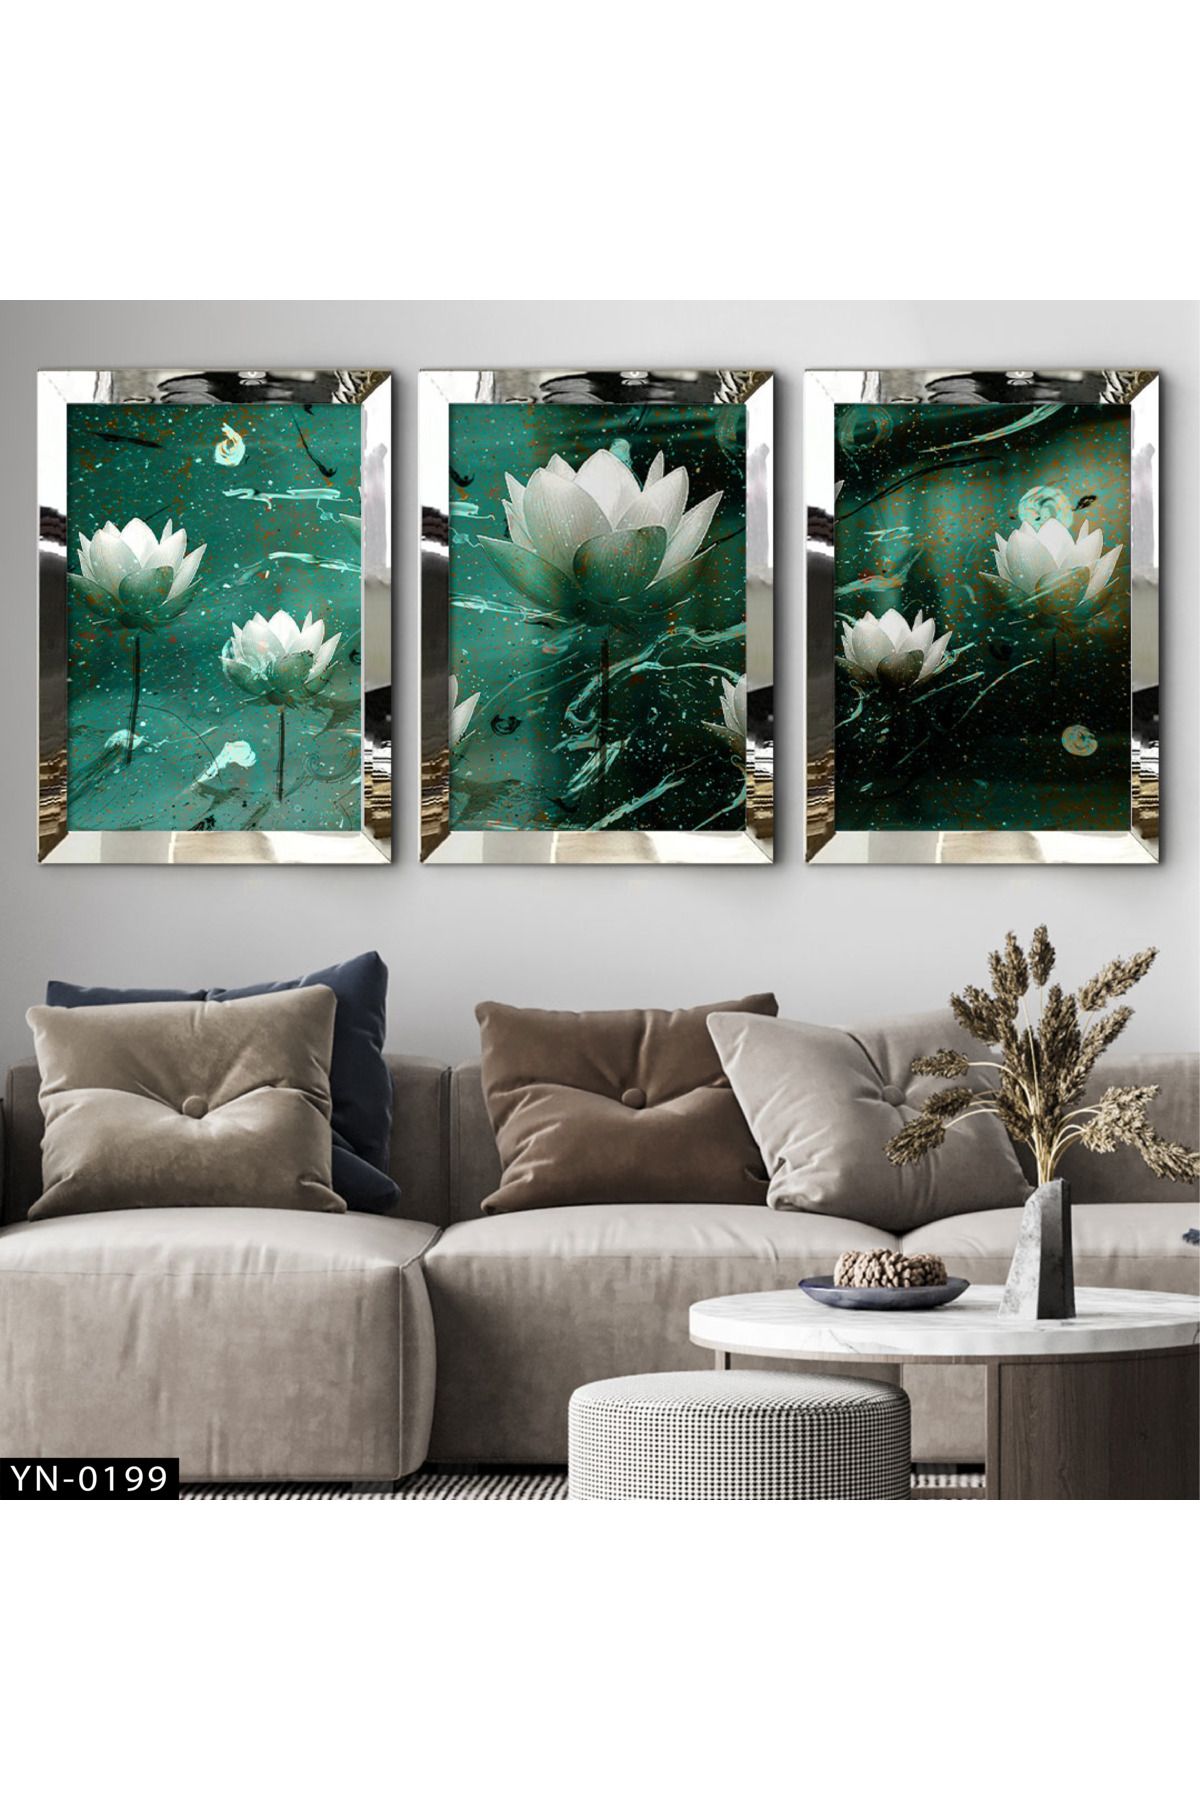 hanhomeart Yeşil Zeminli Beyaz Lotus Çiçekleri - Gümüş Ayna Çerçeveli Tablo 3'lü Set-hyn-0199